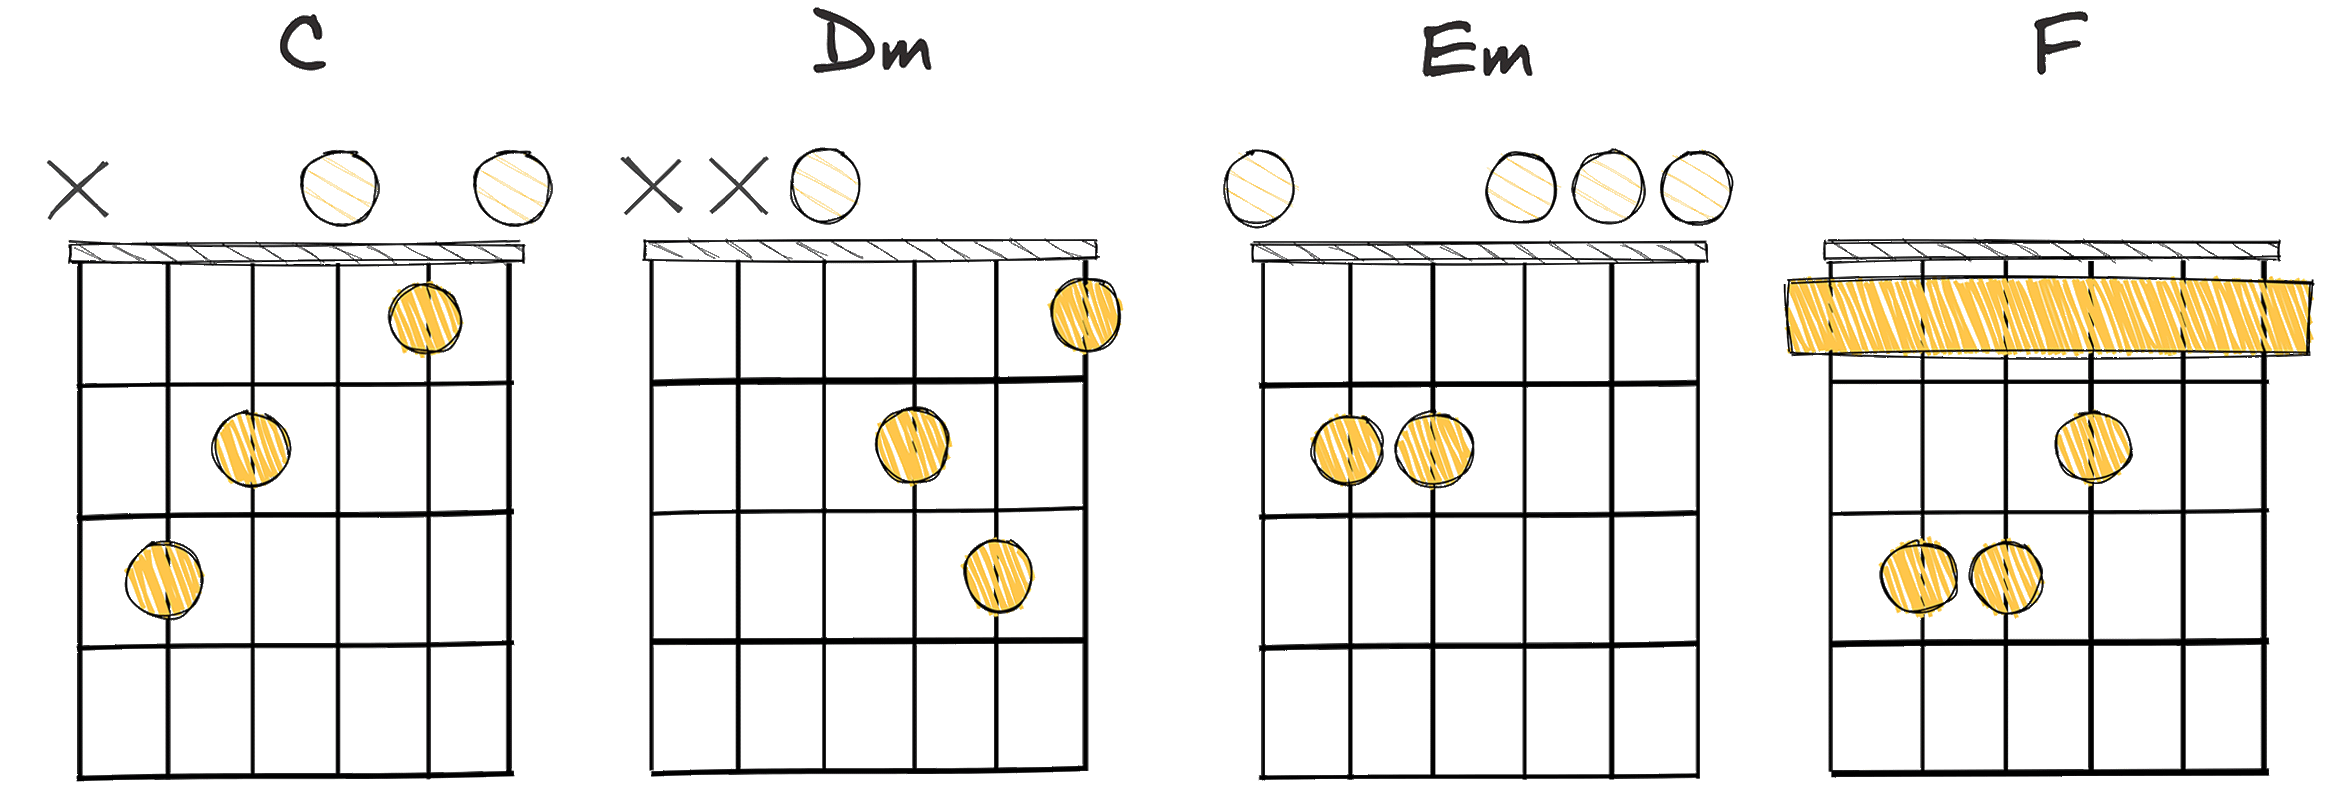 I – ii – iii – IV (1 – 2 – 3 – 4) chords diagram